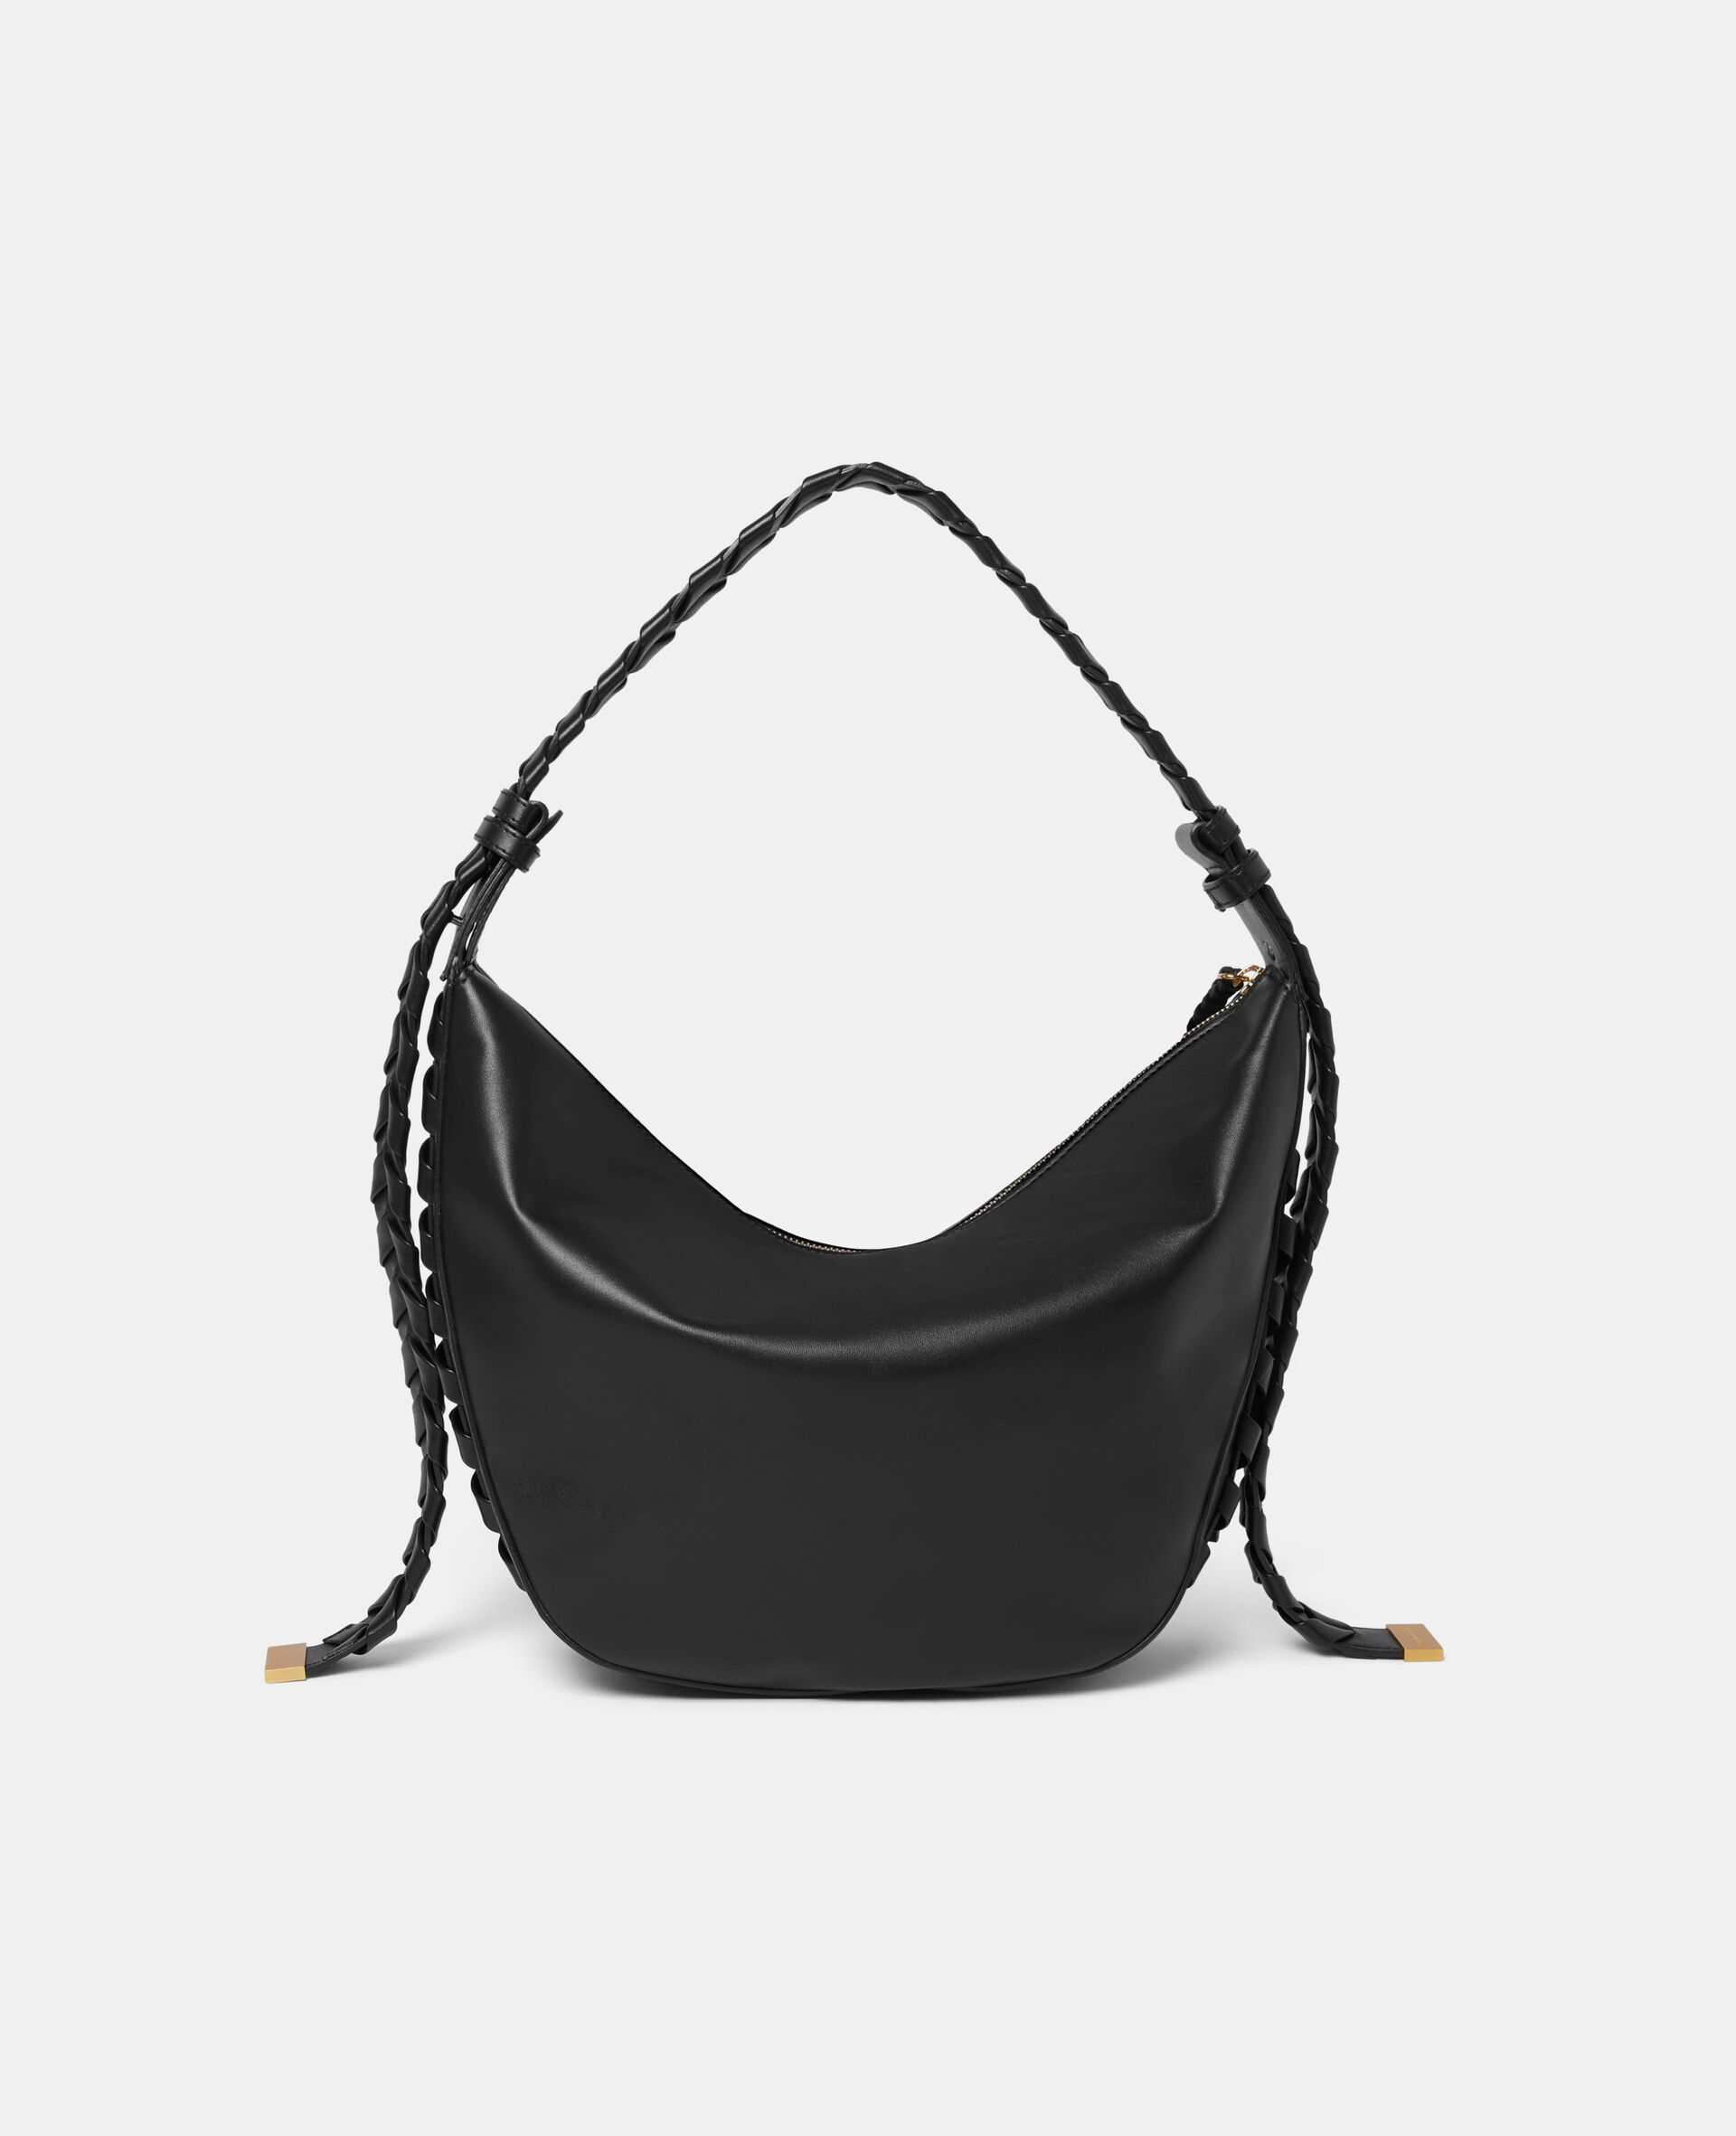 Medium Zip Hobo Shoulder Bag-Black-large image number 2